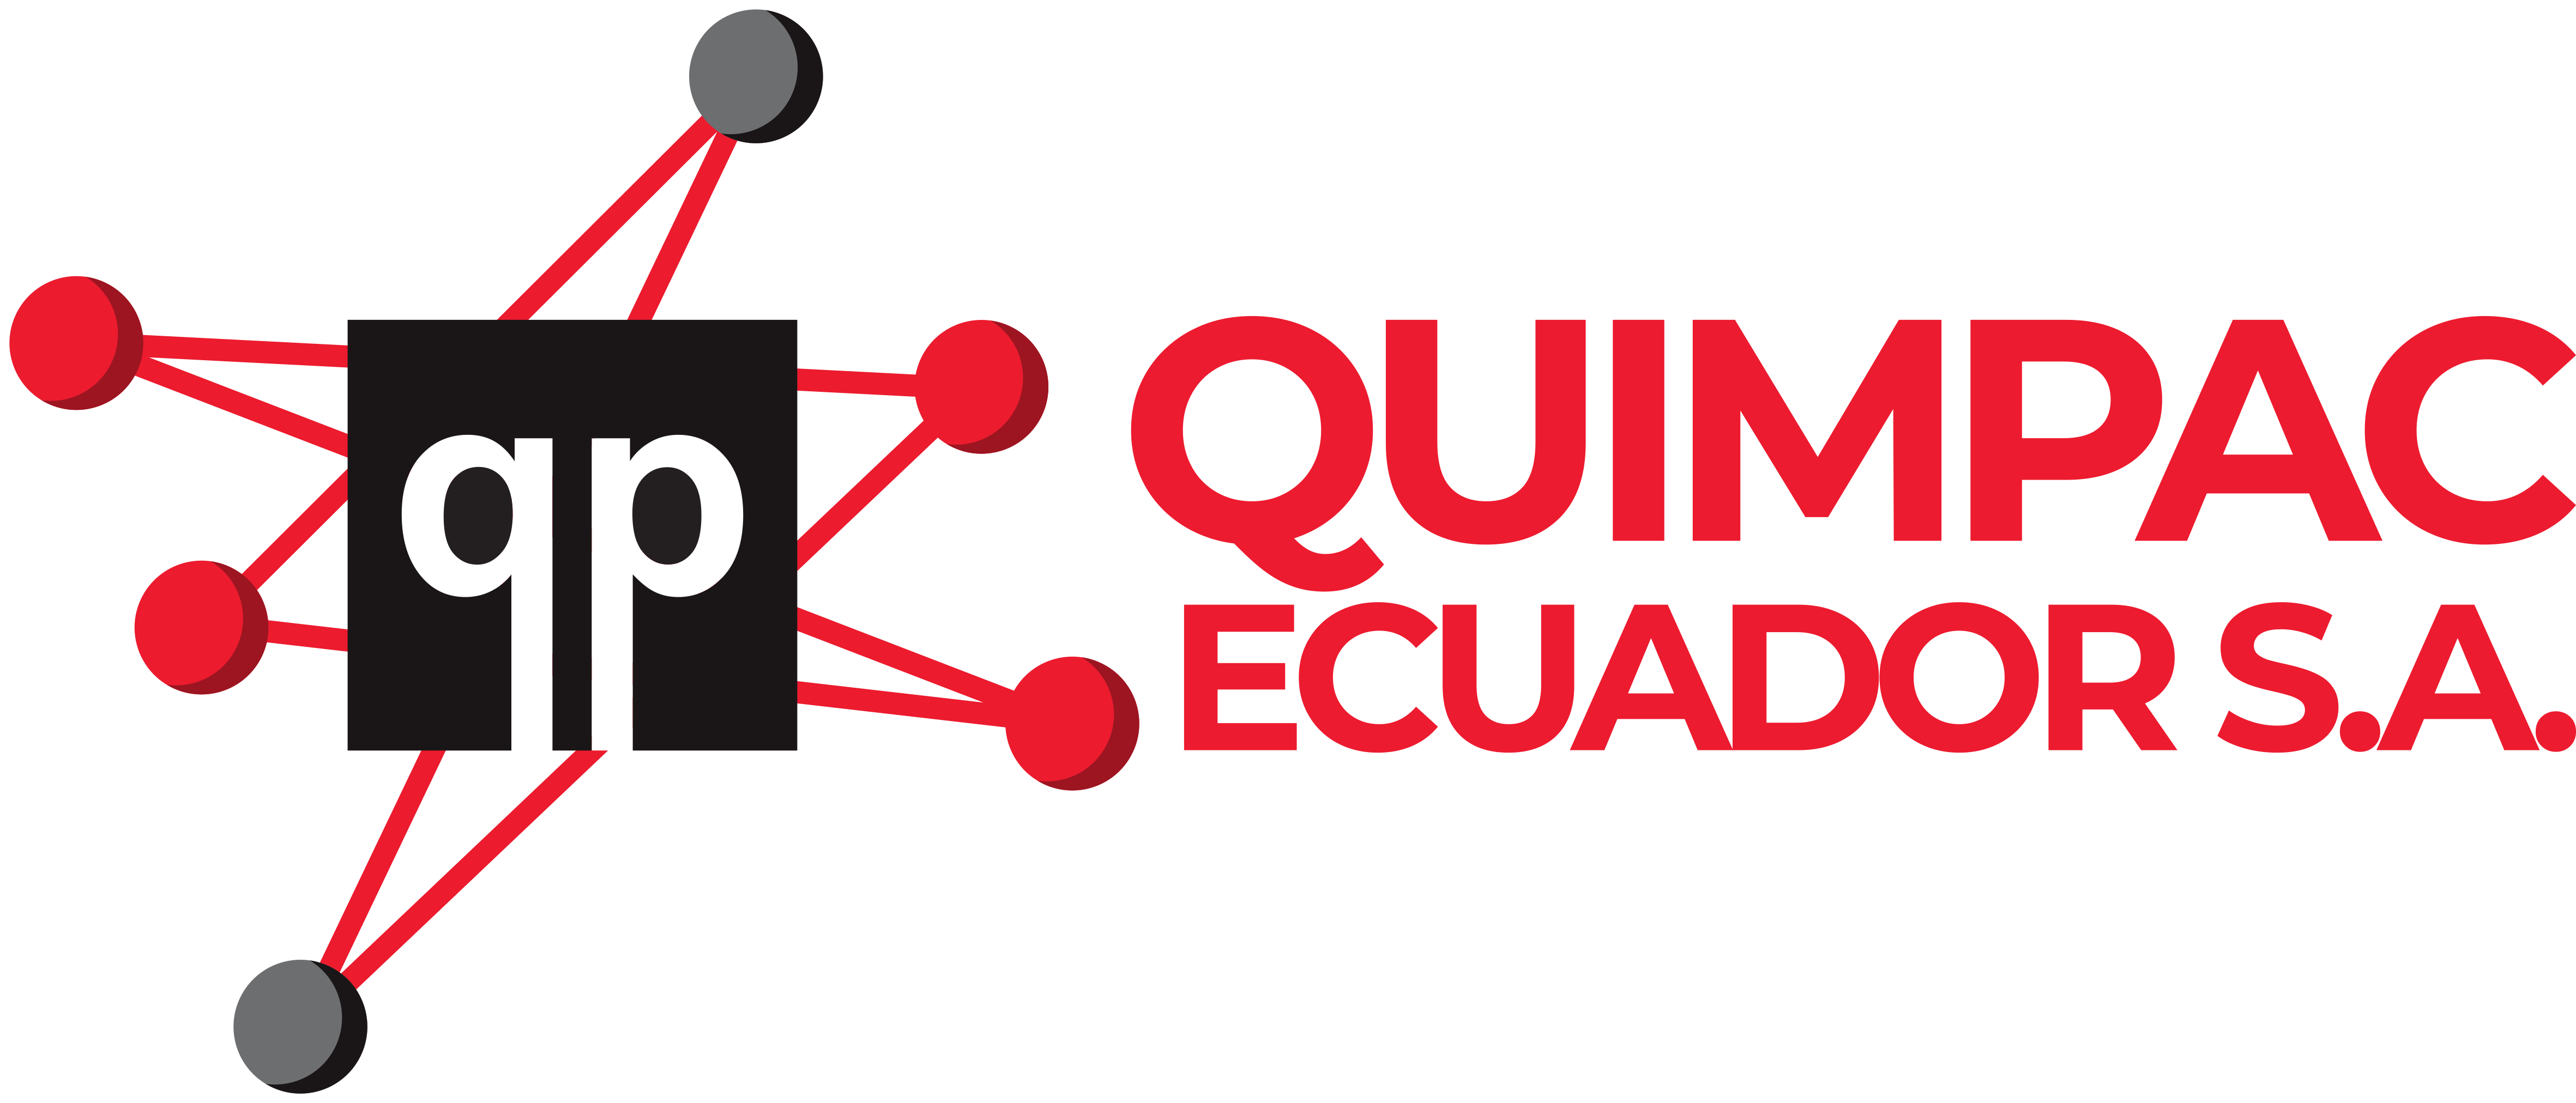 Quimpac